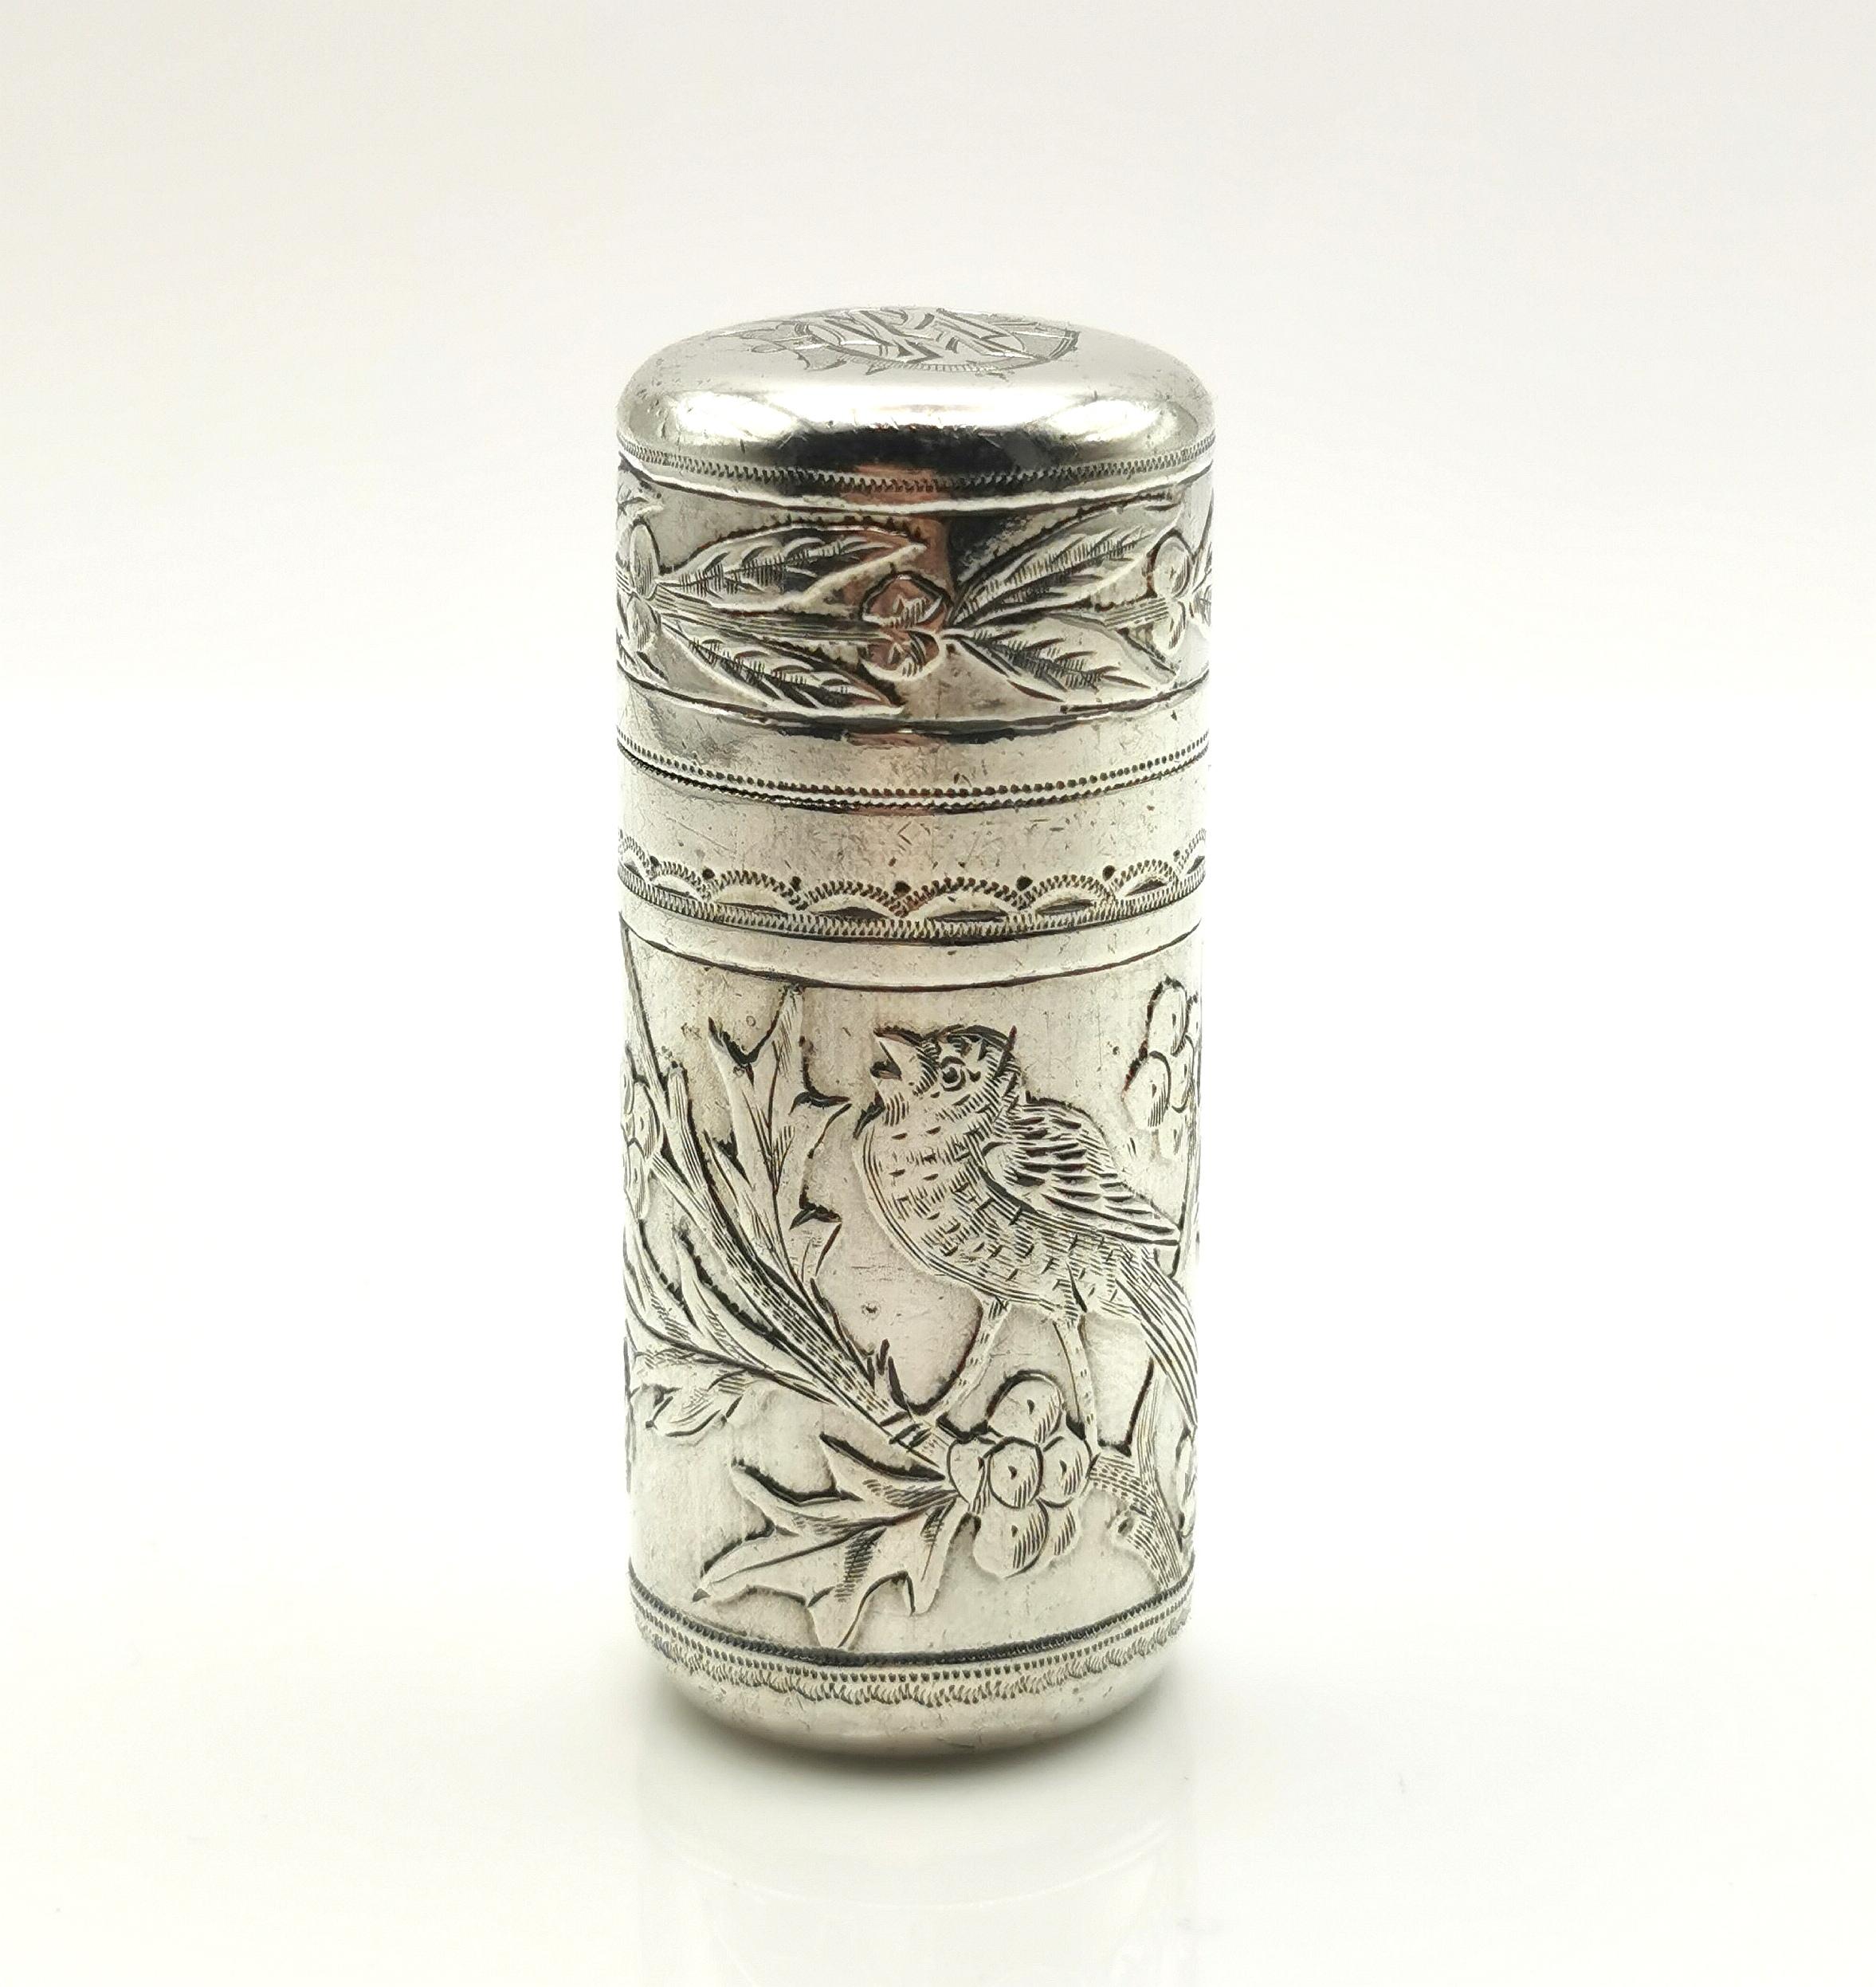 Eine schöne antike Sterling Silber Duft Flasche.

Es handelt sich um einen zylindrischen Flakon aus Sterlingsilber mit Glaseinsatz und Stopfen.

Es hat die schönste Gravur von Vögeln und Holly mit einigen repousse Details und ein Monogramm auf den